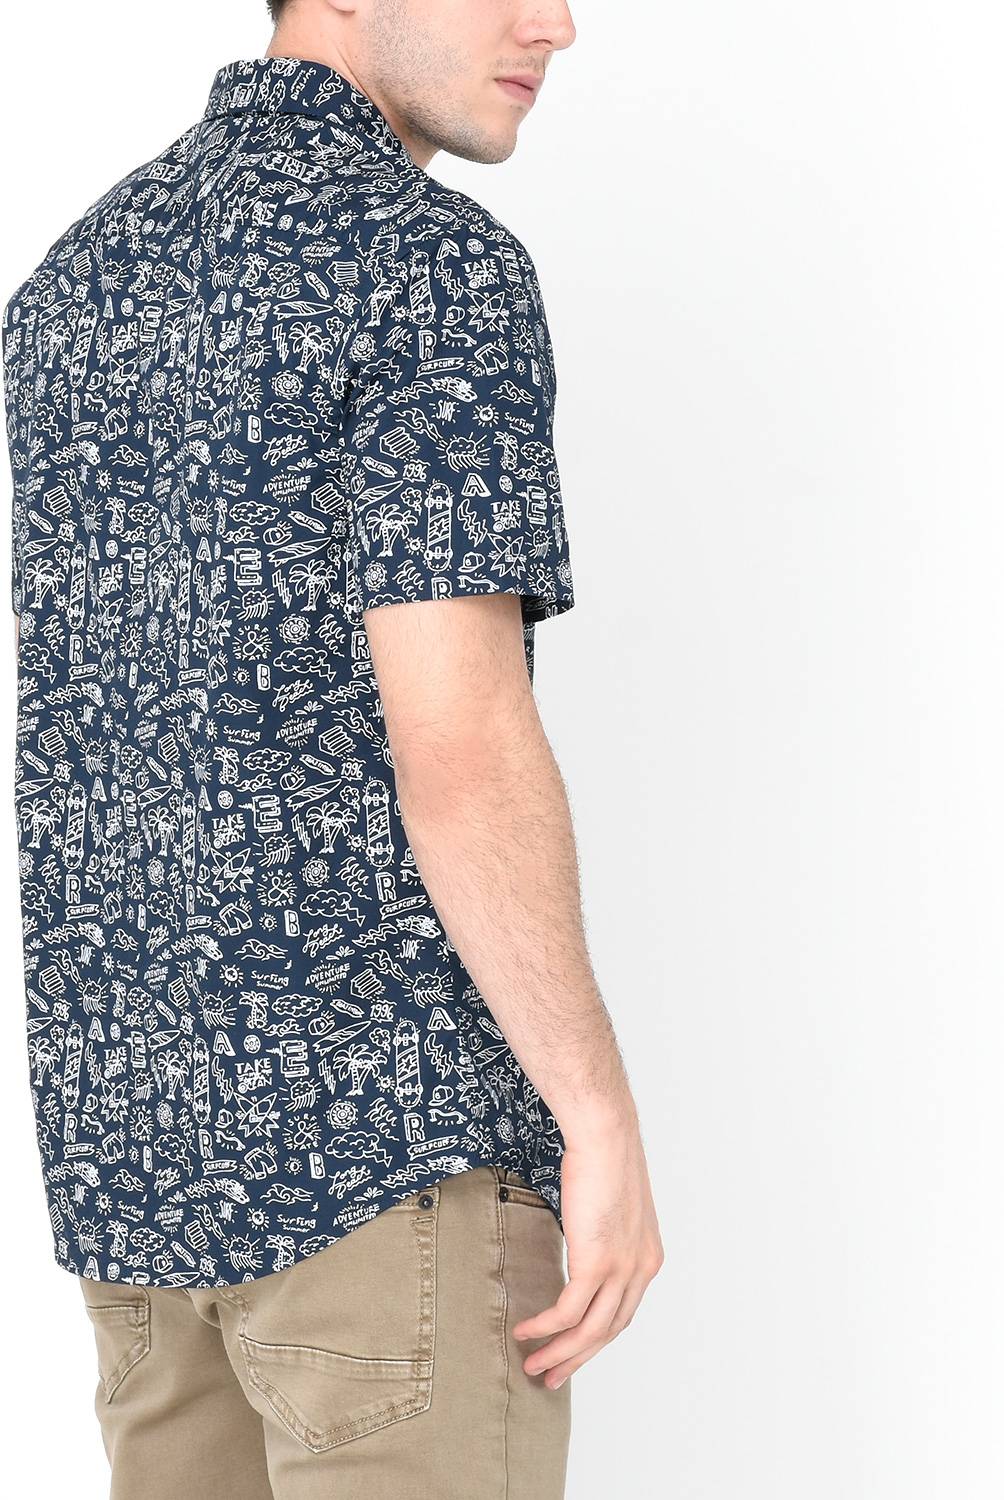 BEARCLIFF - Camisa